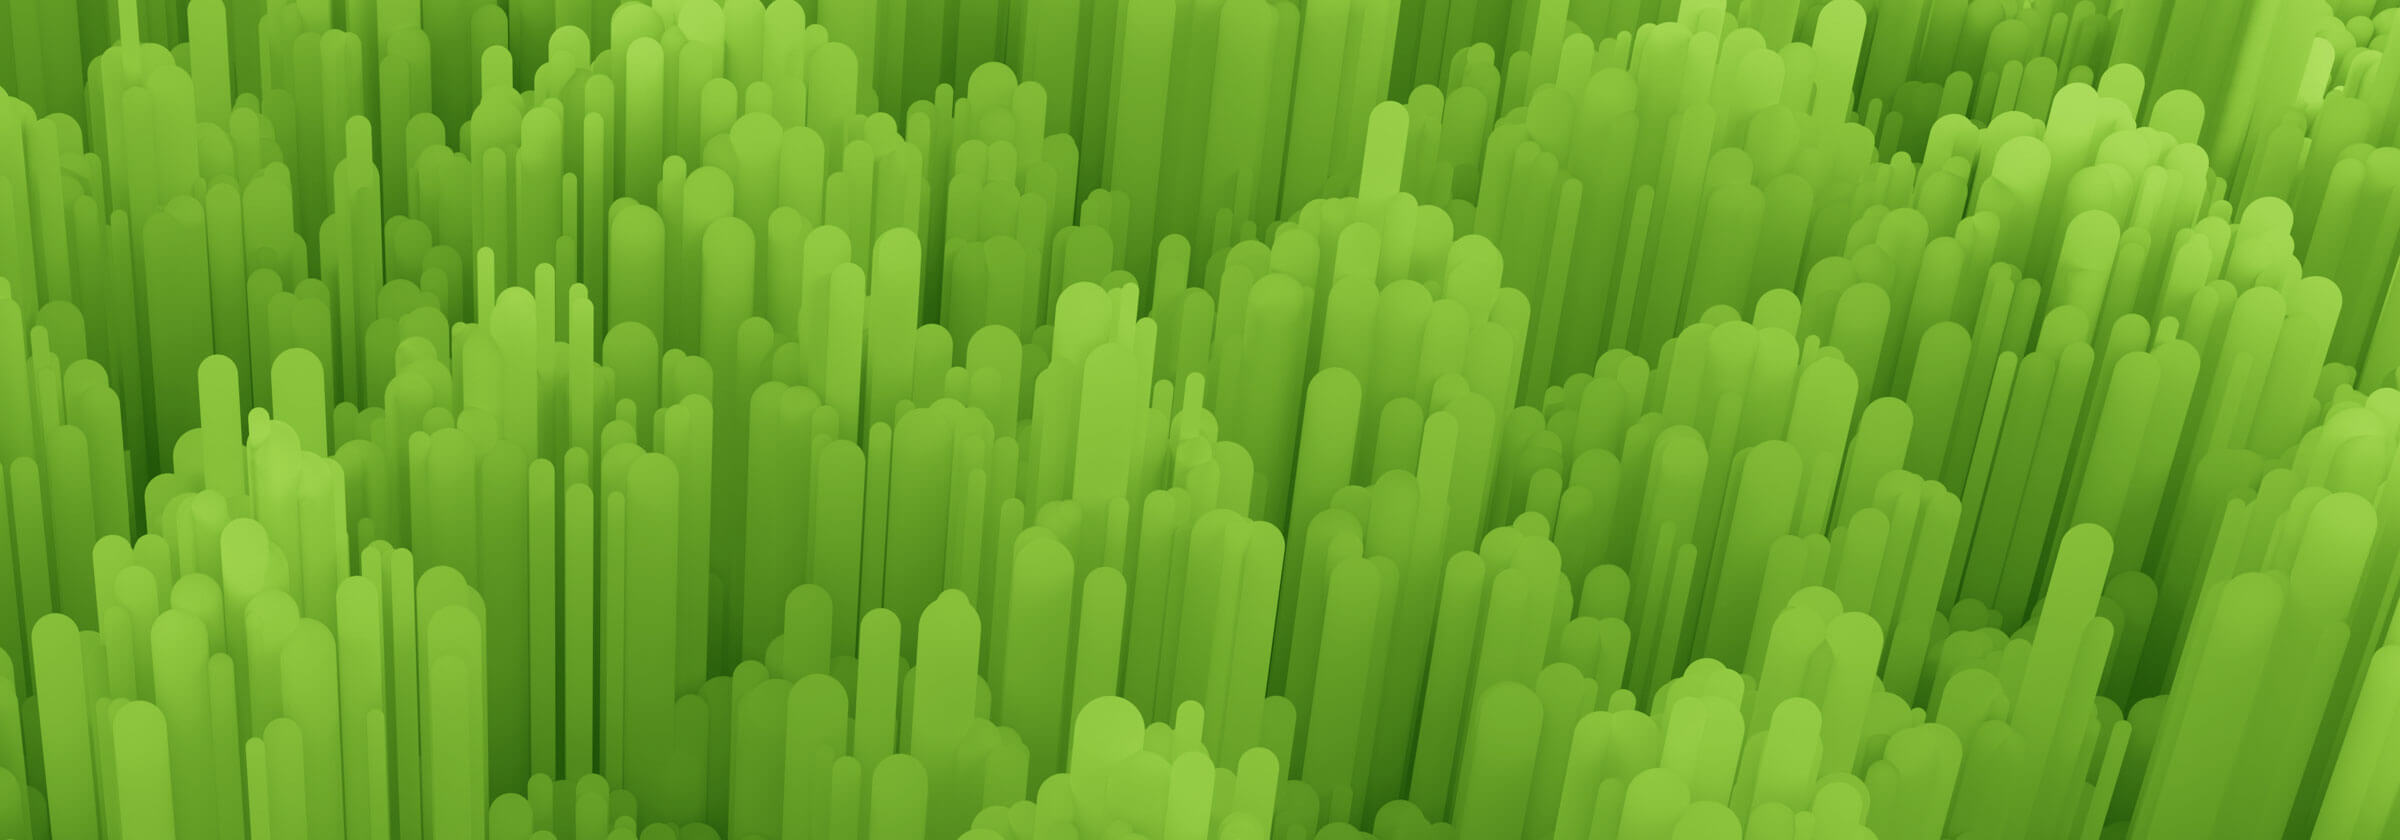 Green data texture